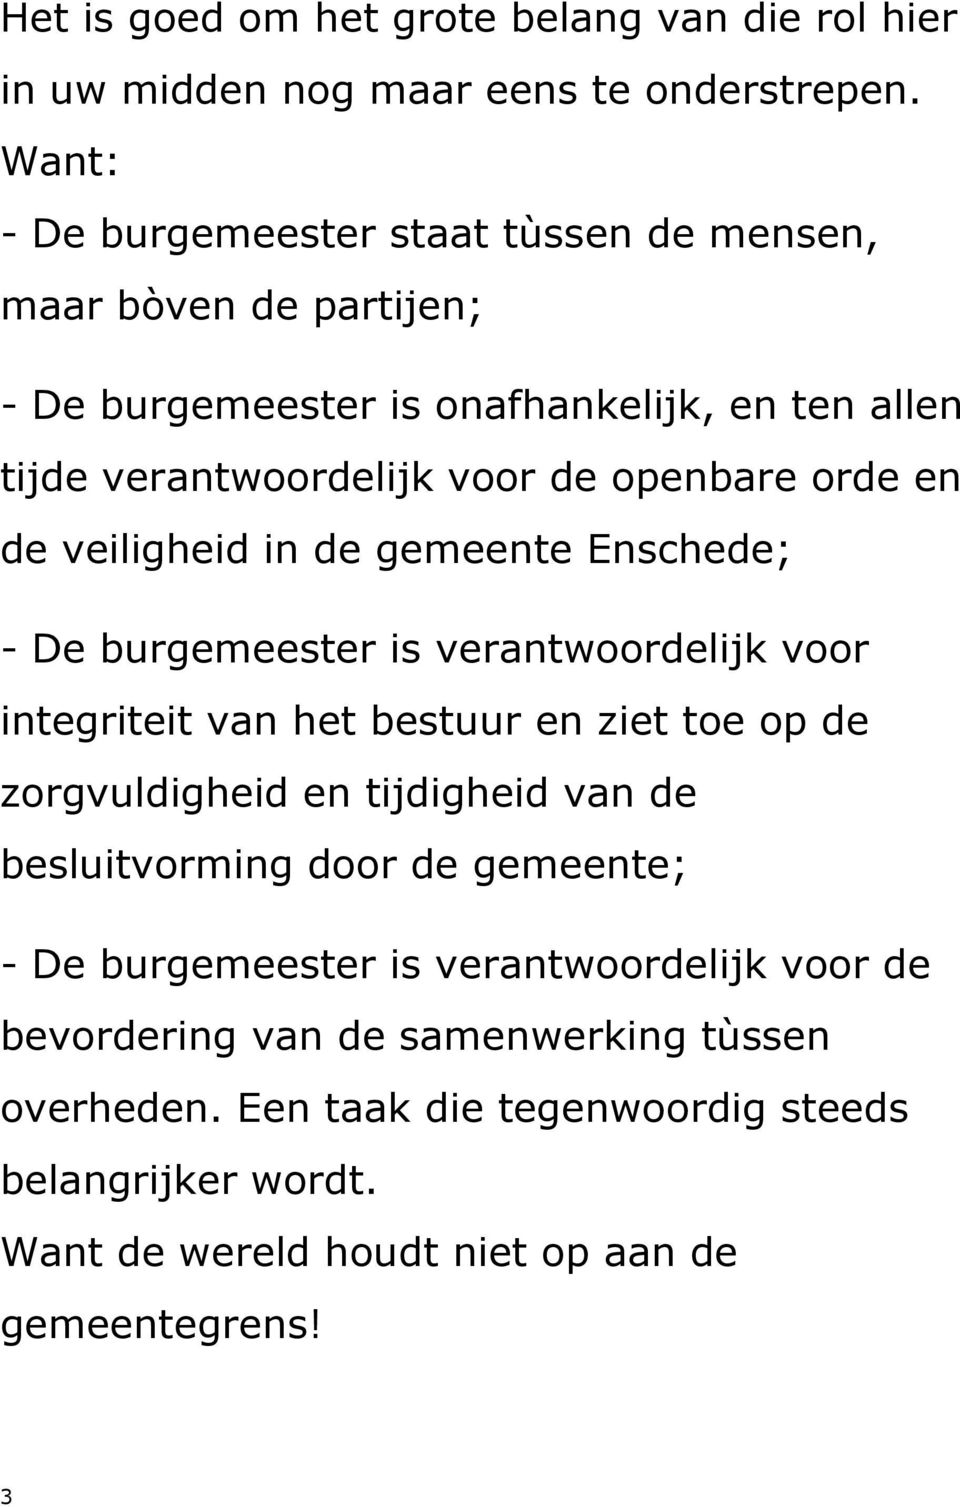 orde en de veiligheid in de gemeente Enschede; - De burgemeester is verantwoordelijk voor integriteit van het bestuur en ziet toe op de zorgvuldigheid en tijdigheid